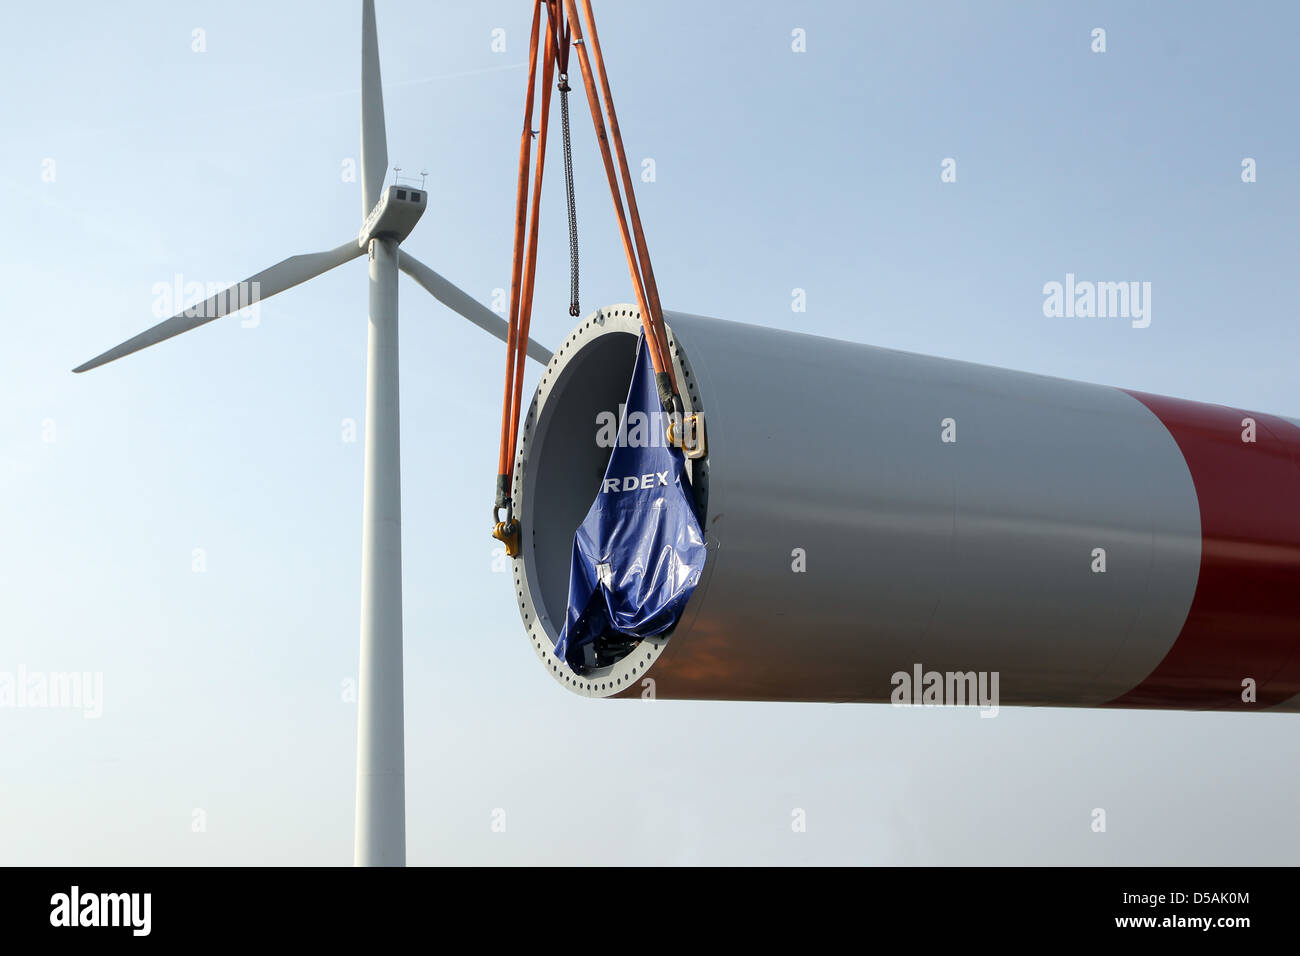 Geben, Deutschland, installiert mit Hilfe von zwei Kränen, ein Wind-Turbine-Unternehmen Nordex (Nordex Modell 100) Stockfoto